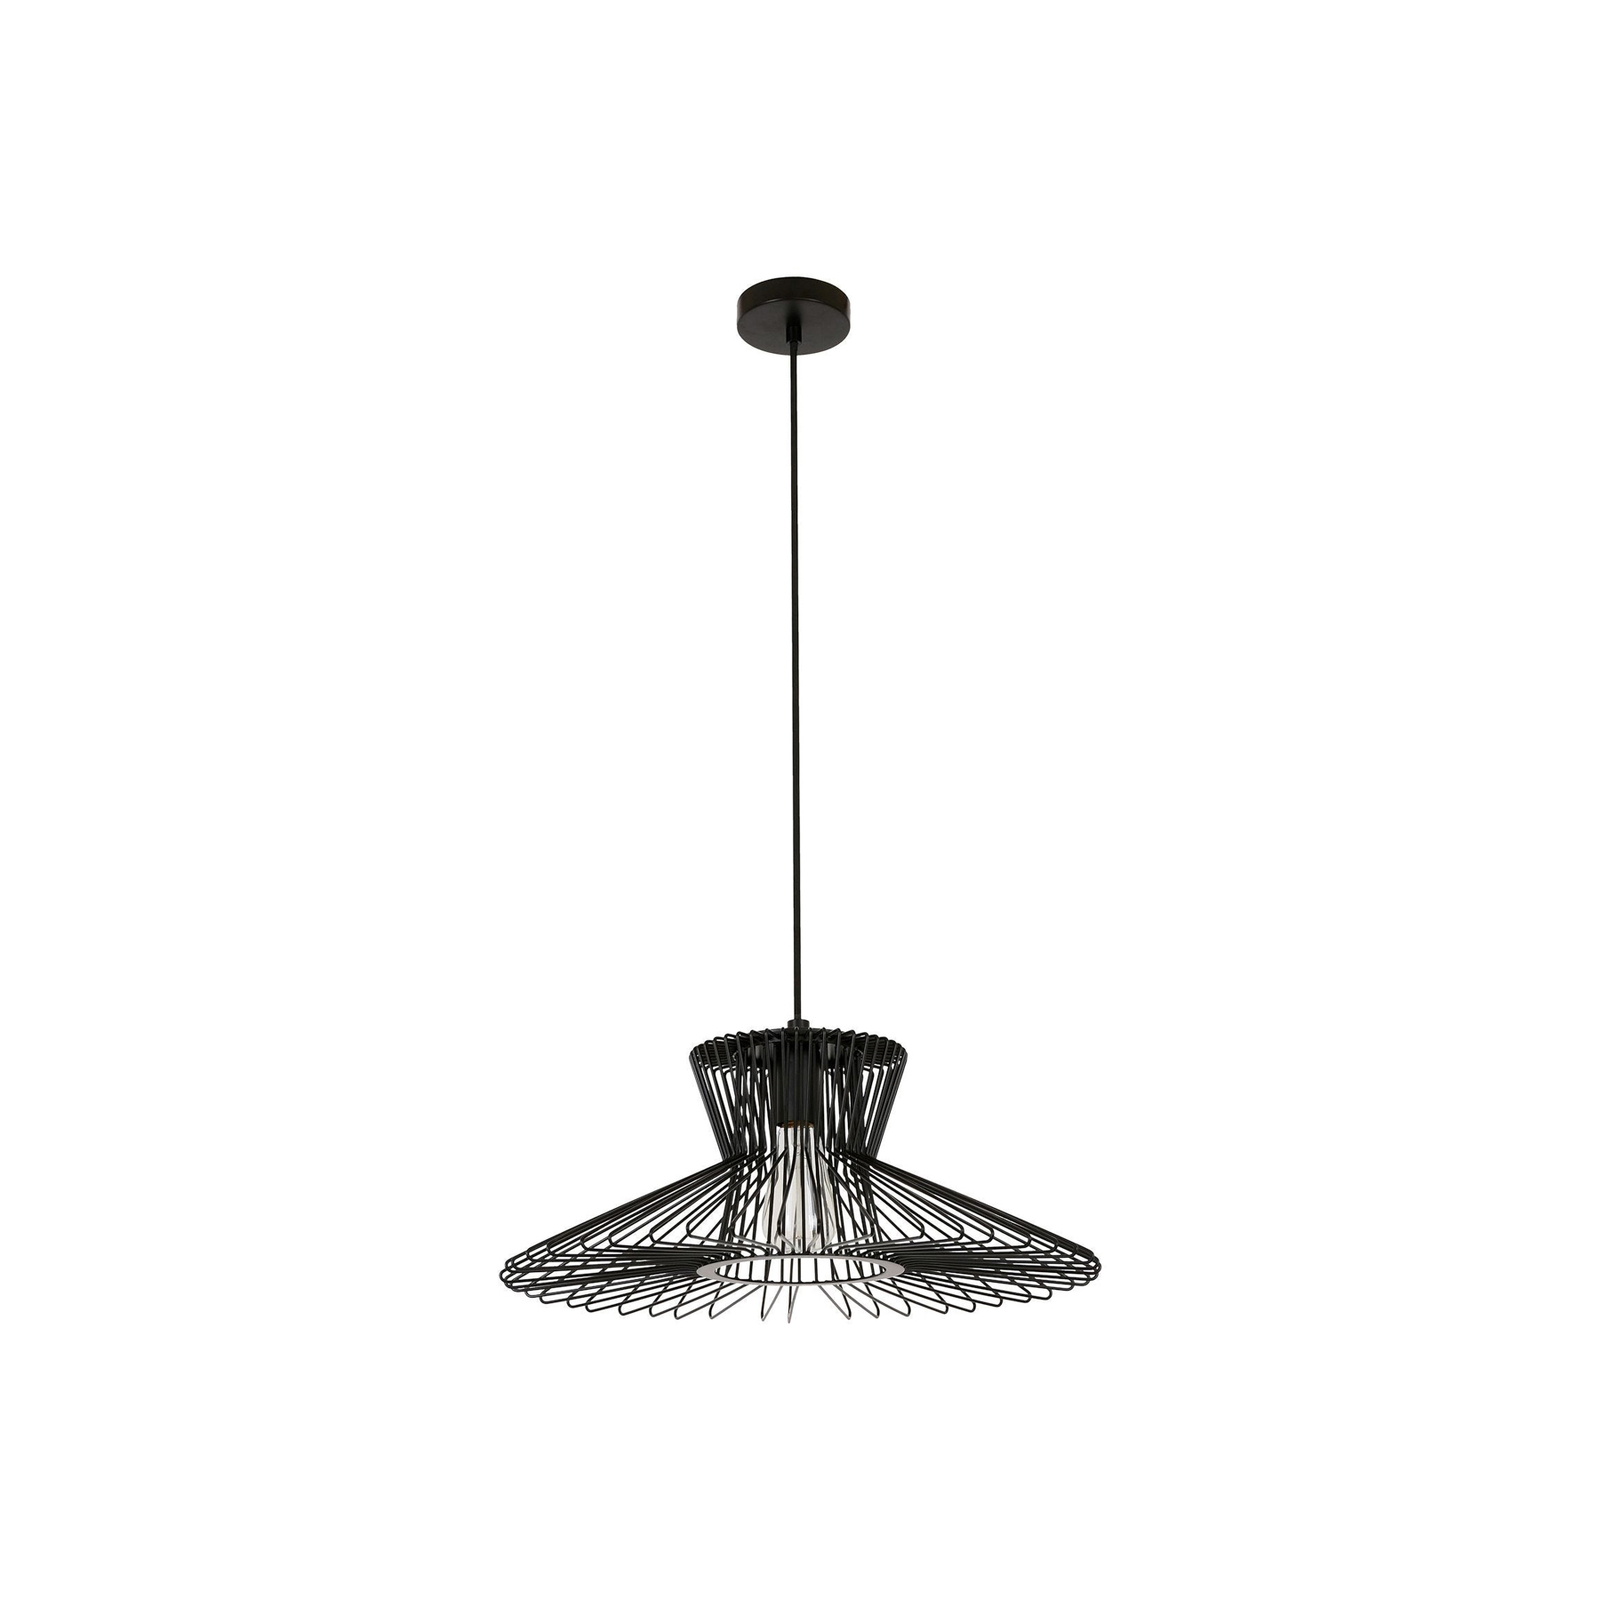 Hanglamp Pheonix Flair zwart, metaal, Ø 50 cm